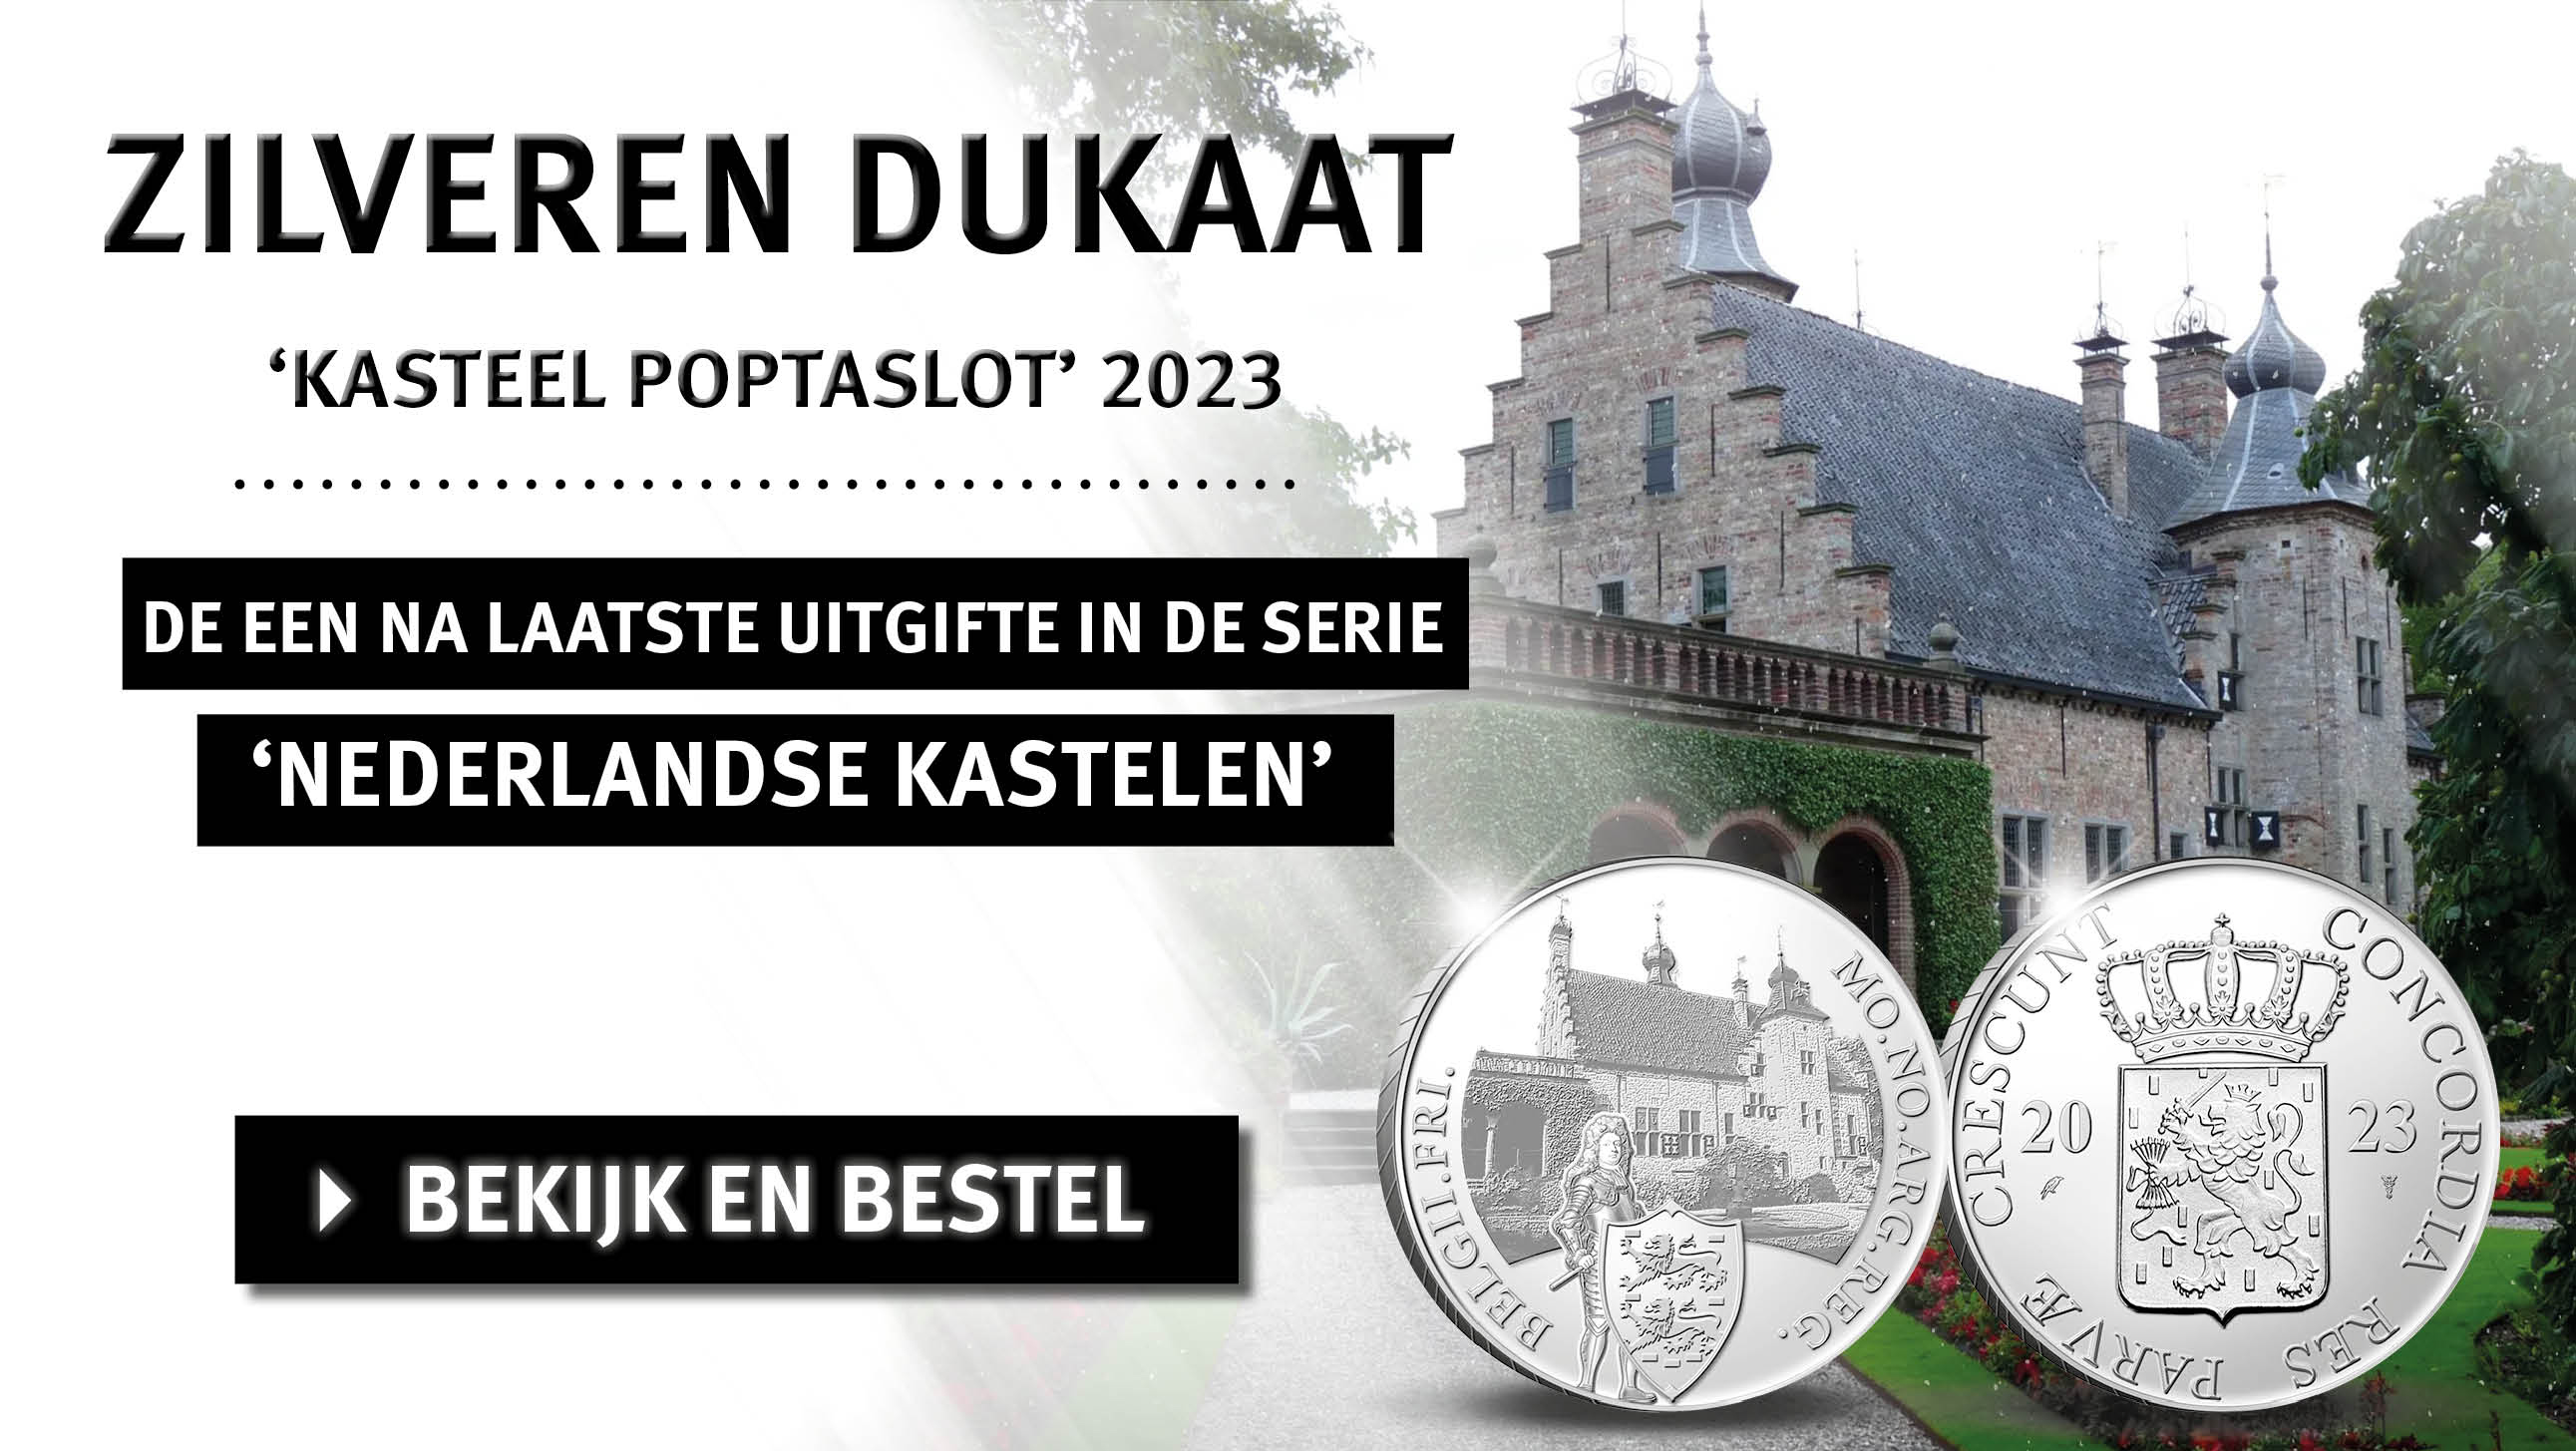 Bekijk en bestel: Zilver Dukaat Kasteel Poptaslot 2023